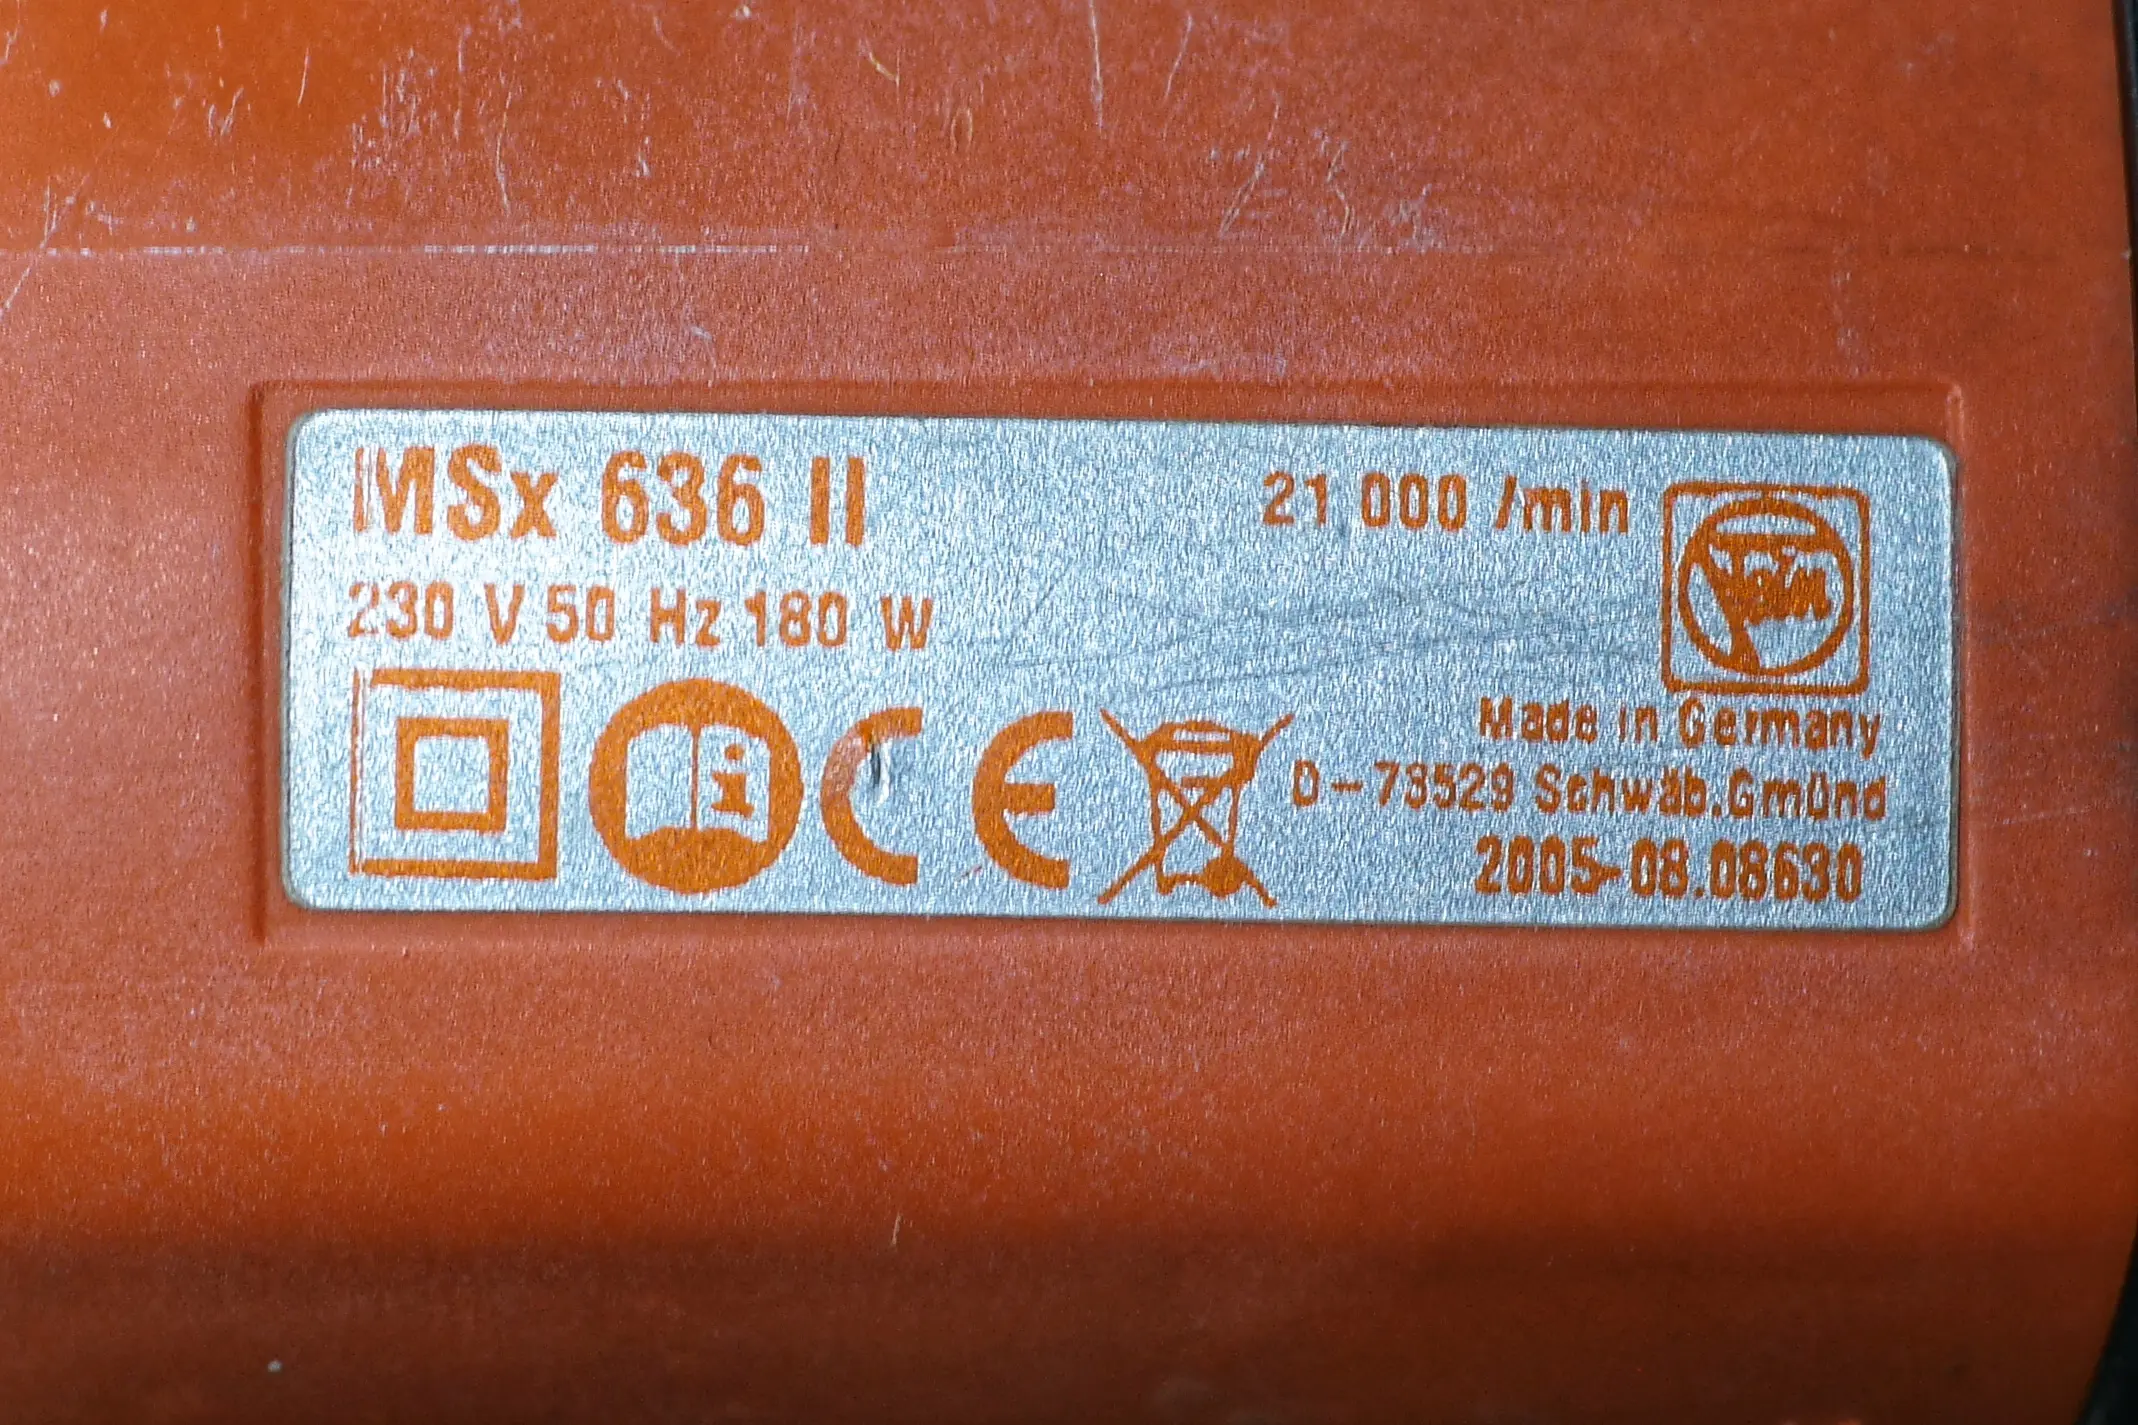 Fein Multimaster MSx 636II: Typenschild